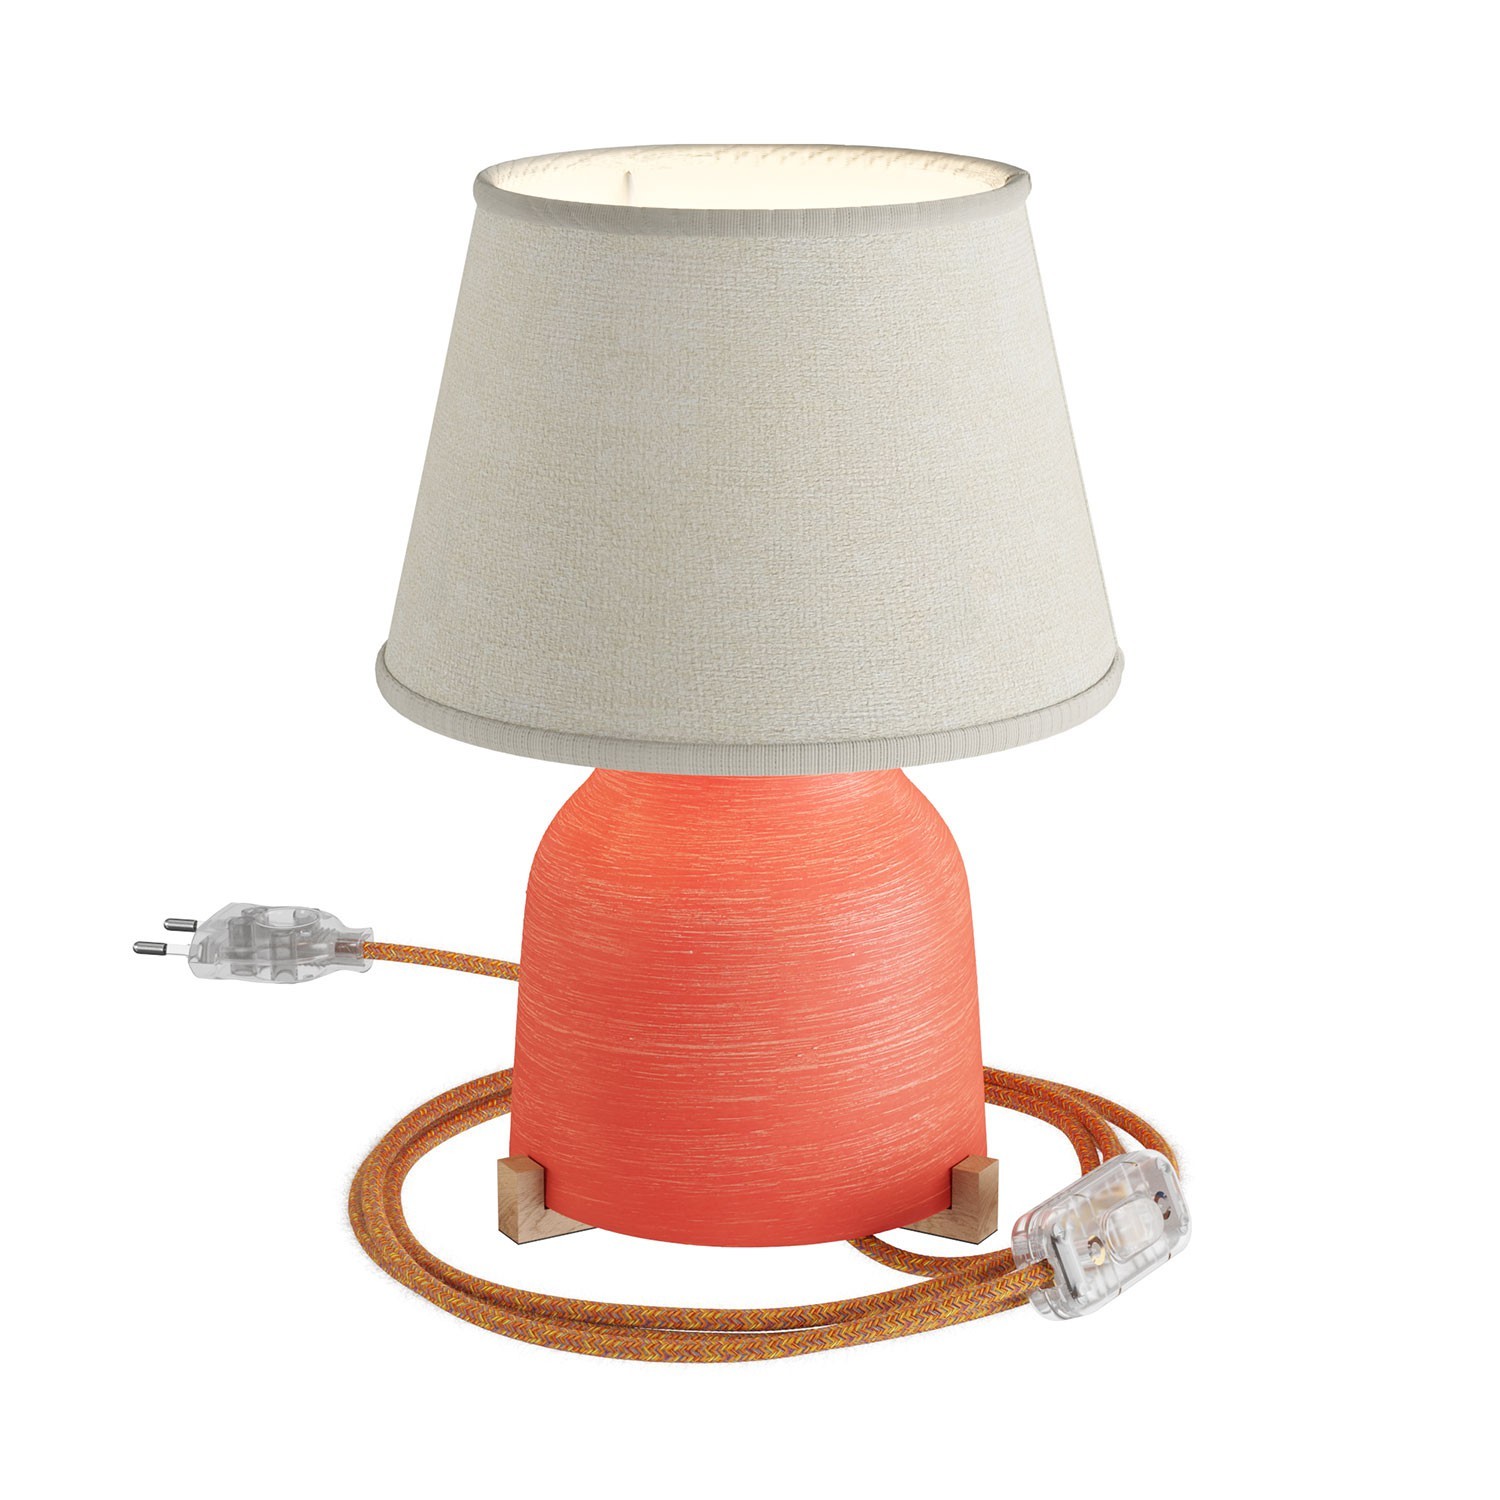 Lampada da tavolo in ceramica Vaso con paralume Impero, completa di cavo tessile, interruttore e spina a 2 poli